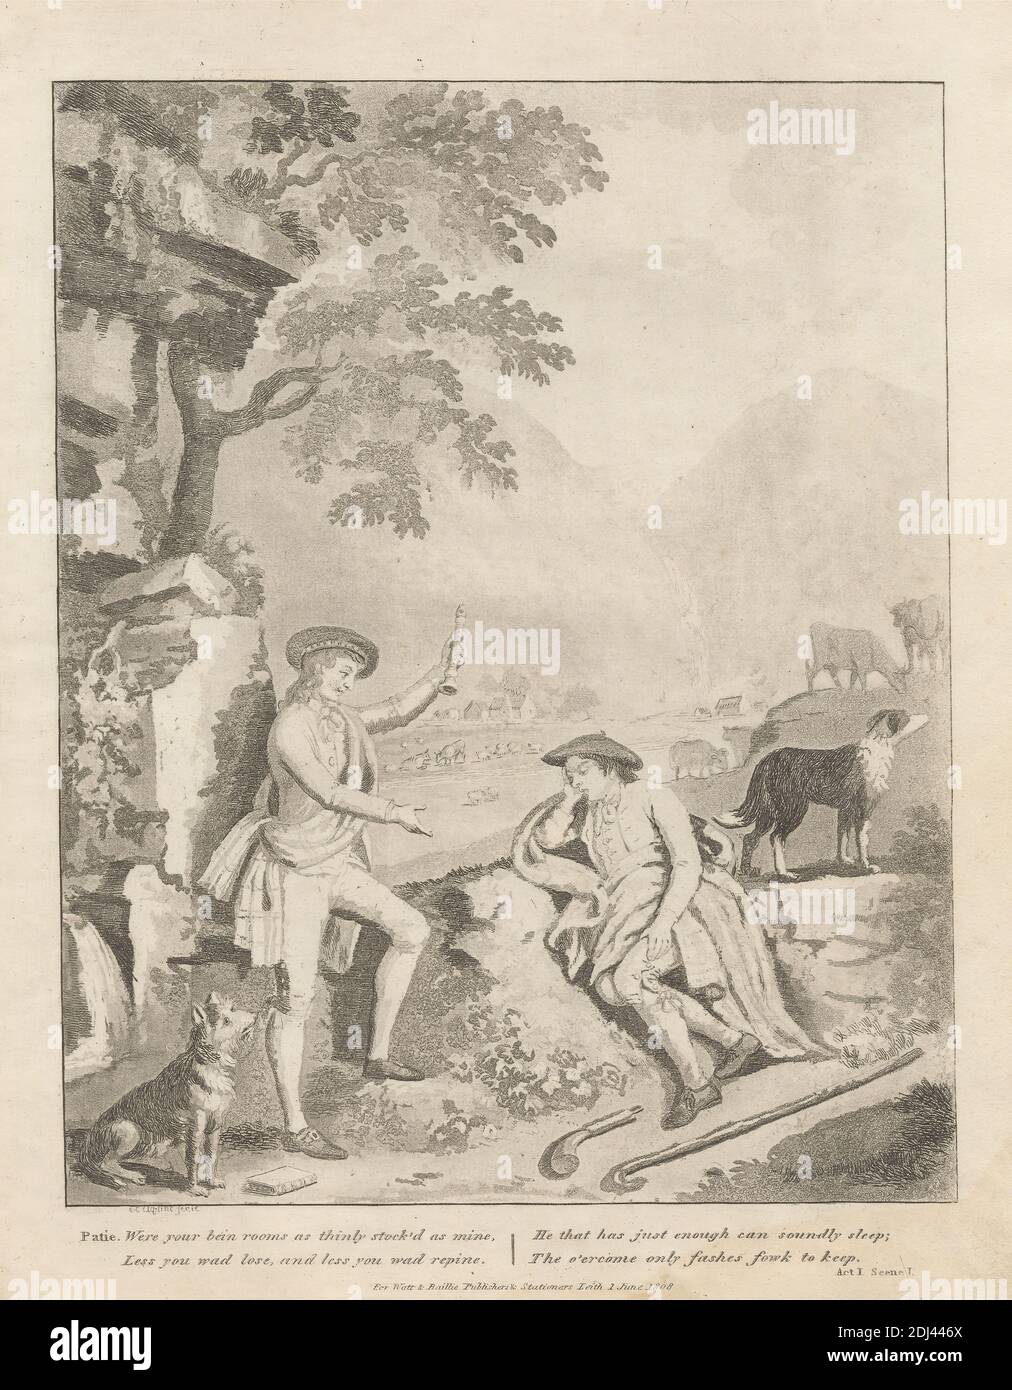 Patie Tadel Roger, Print Made by David Allan, 1744–1796, British, Born in Scotland, after David Allan, 1744–1796, British, Born in Scotland, Published by Watt & Baillie, Active 1808, British, 1808, Etching and aquatint on mäßig Thick, mäßig textured, Cream Wove paper, Sheet: 11 1/8 x 8 7/8 Zoll (28.3 x 22.6 cm), Platte: 10 3/8 x 8 1/8 Zoll (26.4 x 20.7 cm) und Bild: 8 3/4 x 7 Zoll (22.3 x 17.8 cm), Stöcke, Rinder, Komödie, Kostüm, Hunde (Tiere), Genre Thema, Geste, Hügel, Häuser, Illustration, Jacken, Männer, pastoral, Bauern, kariert, Gedicht, Blockflöte, Ruhe, Fluss, Schärpe Stockfoto